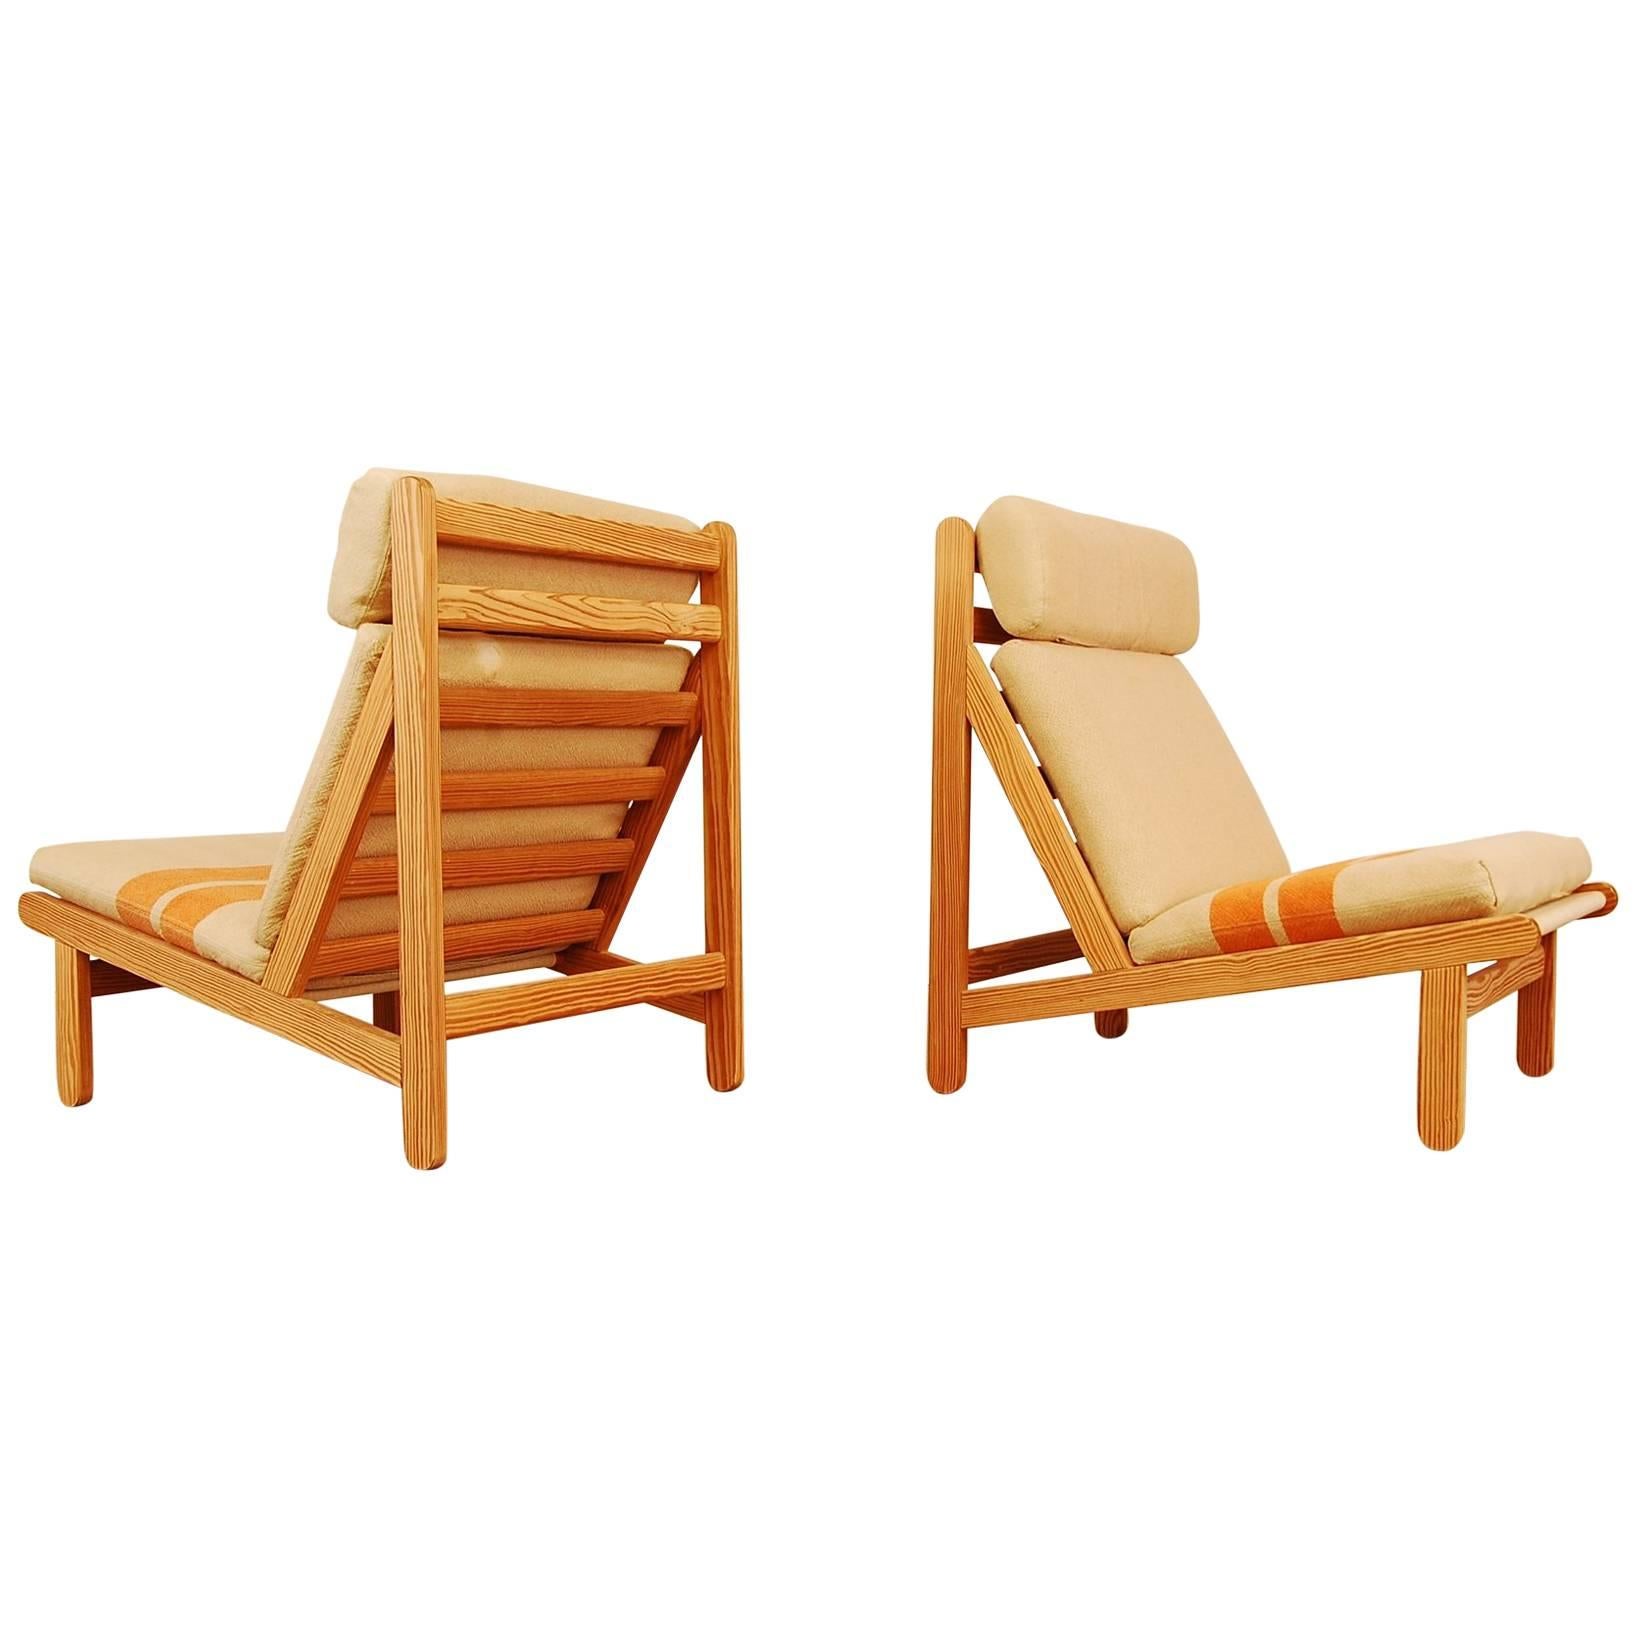 Pair of Bernt Petersen "Rag" Lounge Chairs